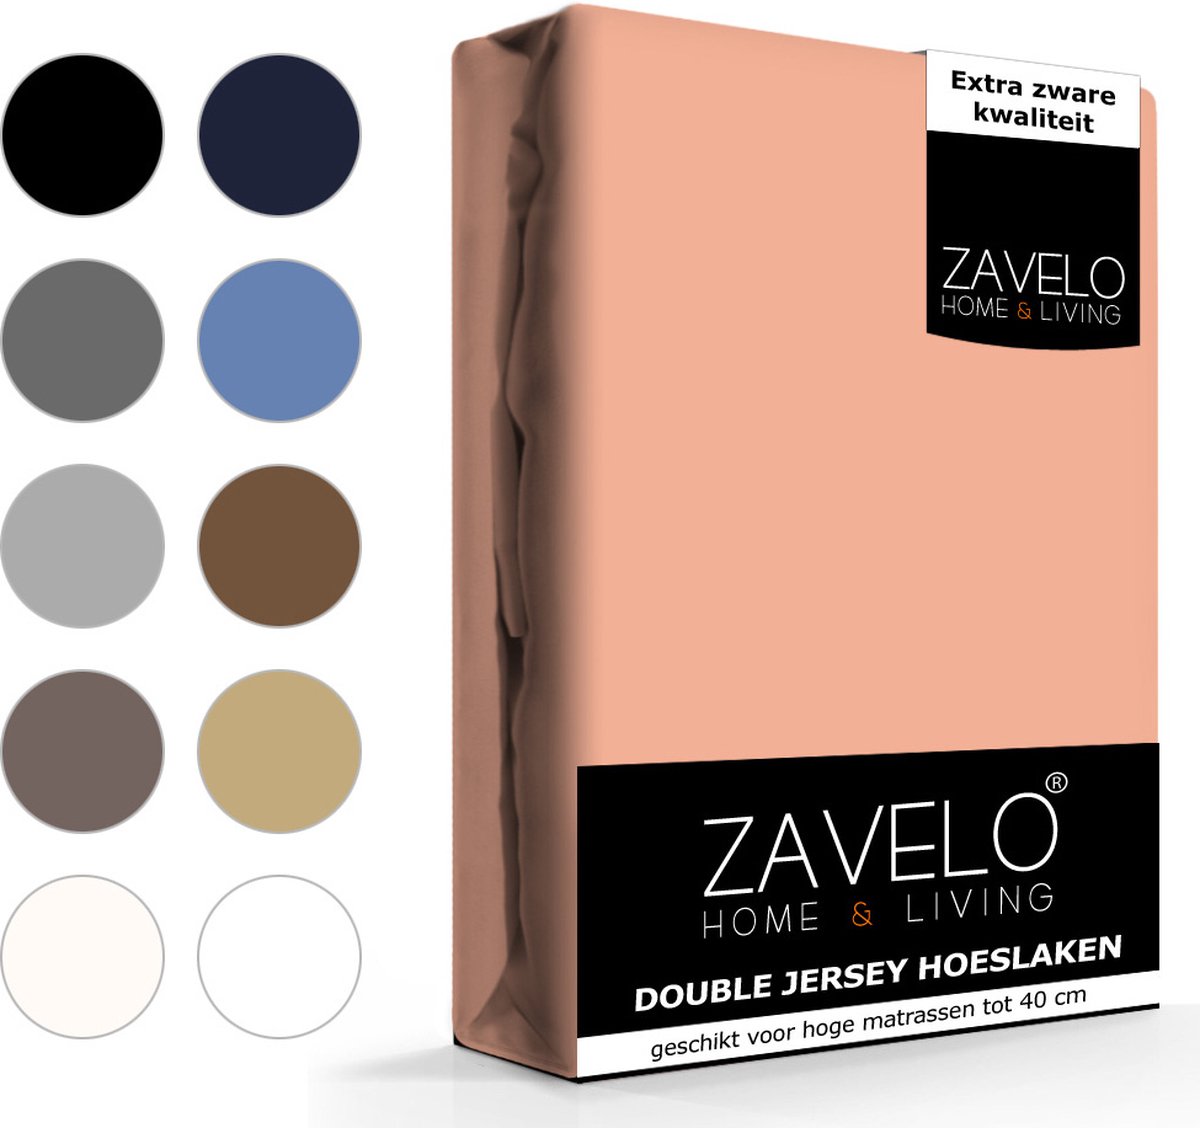 Slaaptextiel Zavelo Double Jersey Hoeslaken Perzik-lits-jumeaux (180x200 Cm) - Roze